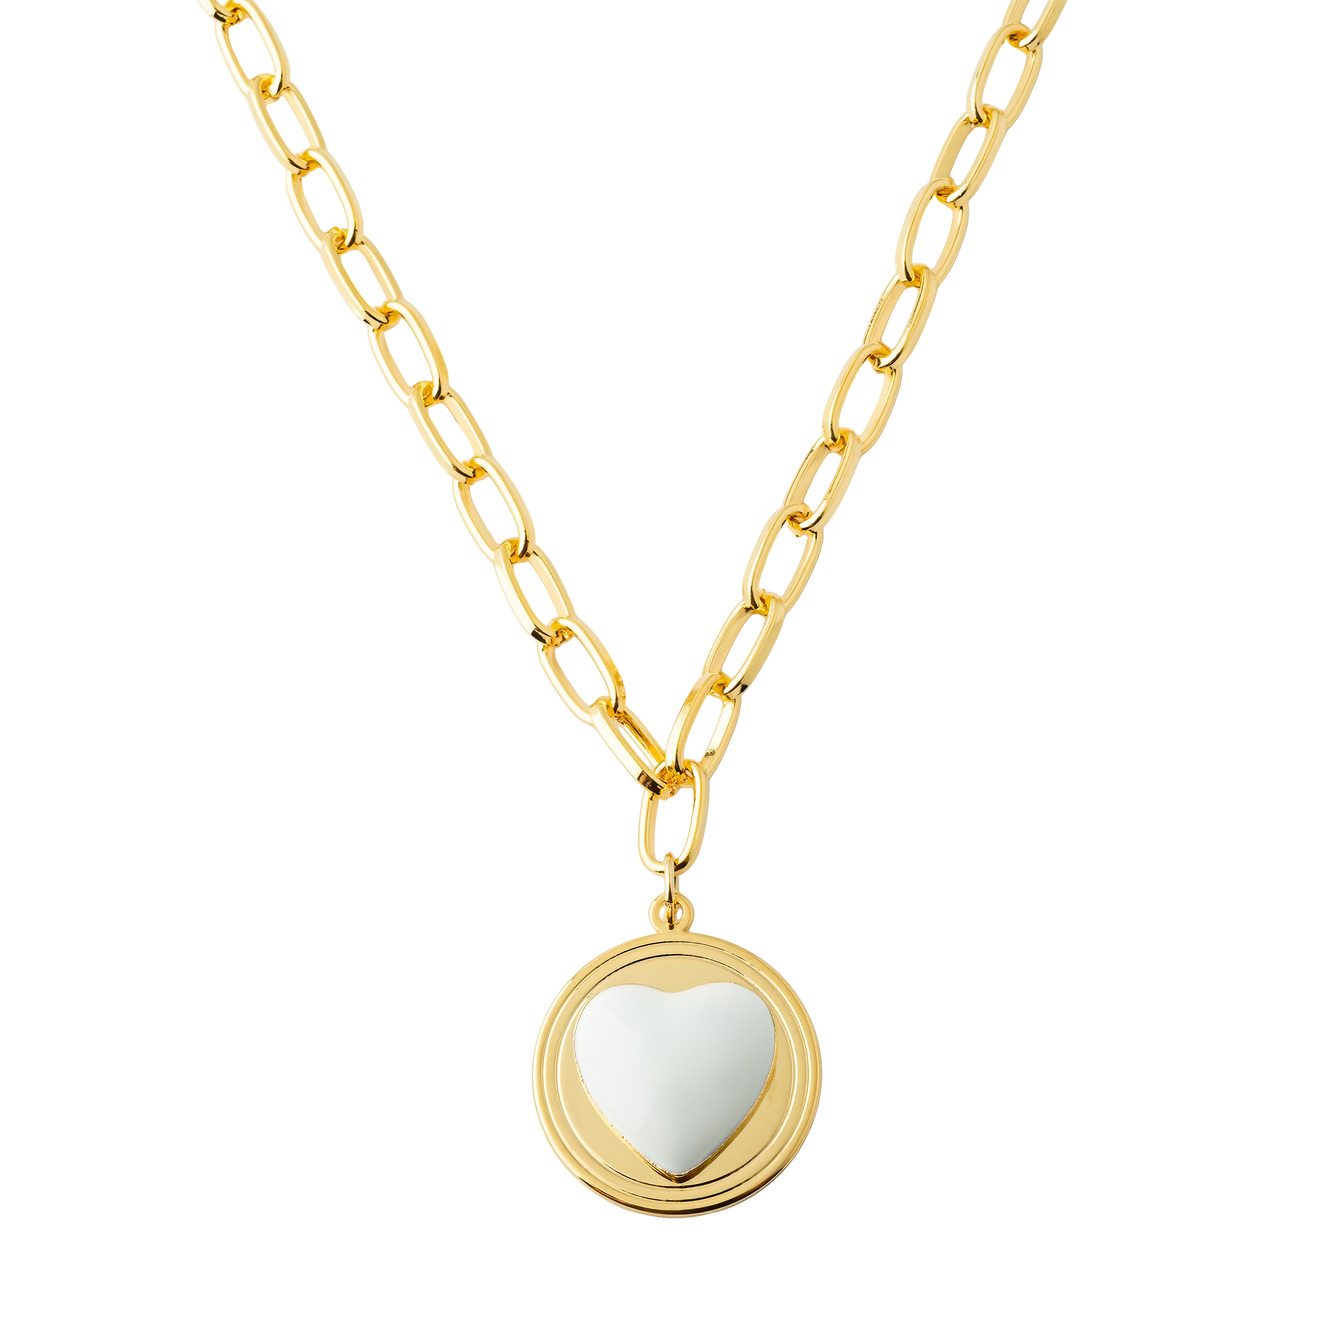 Aqua Золотистое колье-цепь с медальоном с белым сердцем цена и фото